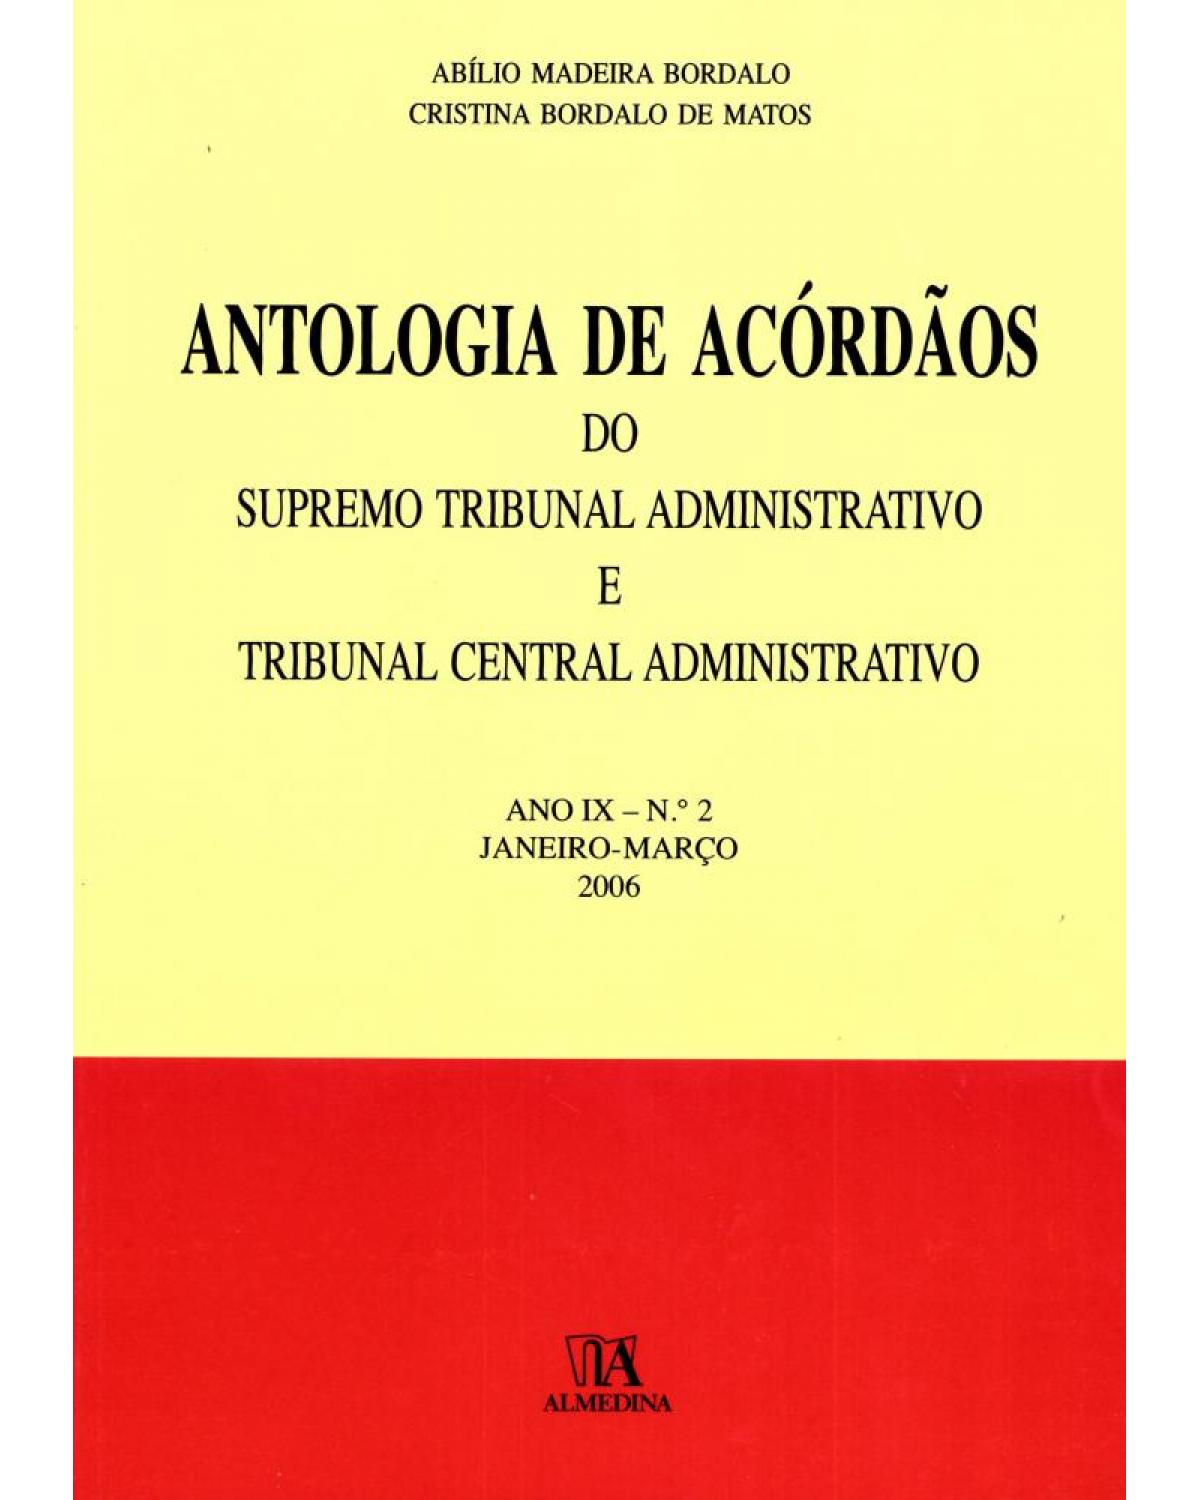 Antologia de acórdãos do supremo tribunal administrativo e tribunal central administrativo - Volume 2: ano IX - Janeiro-março 2006 - 1ª Edição | 2006